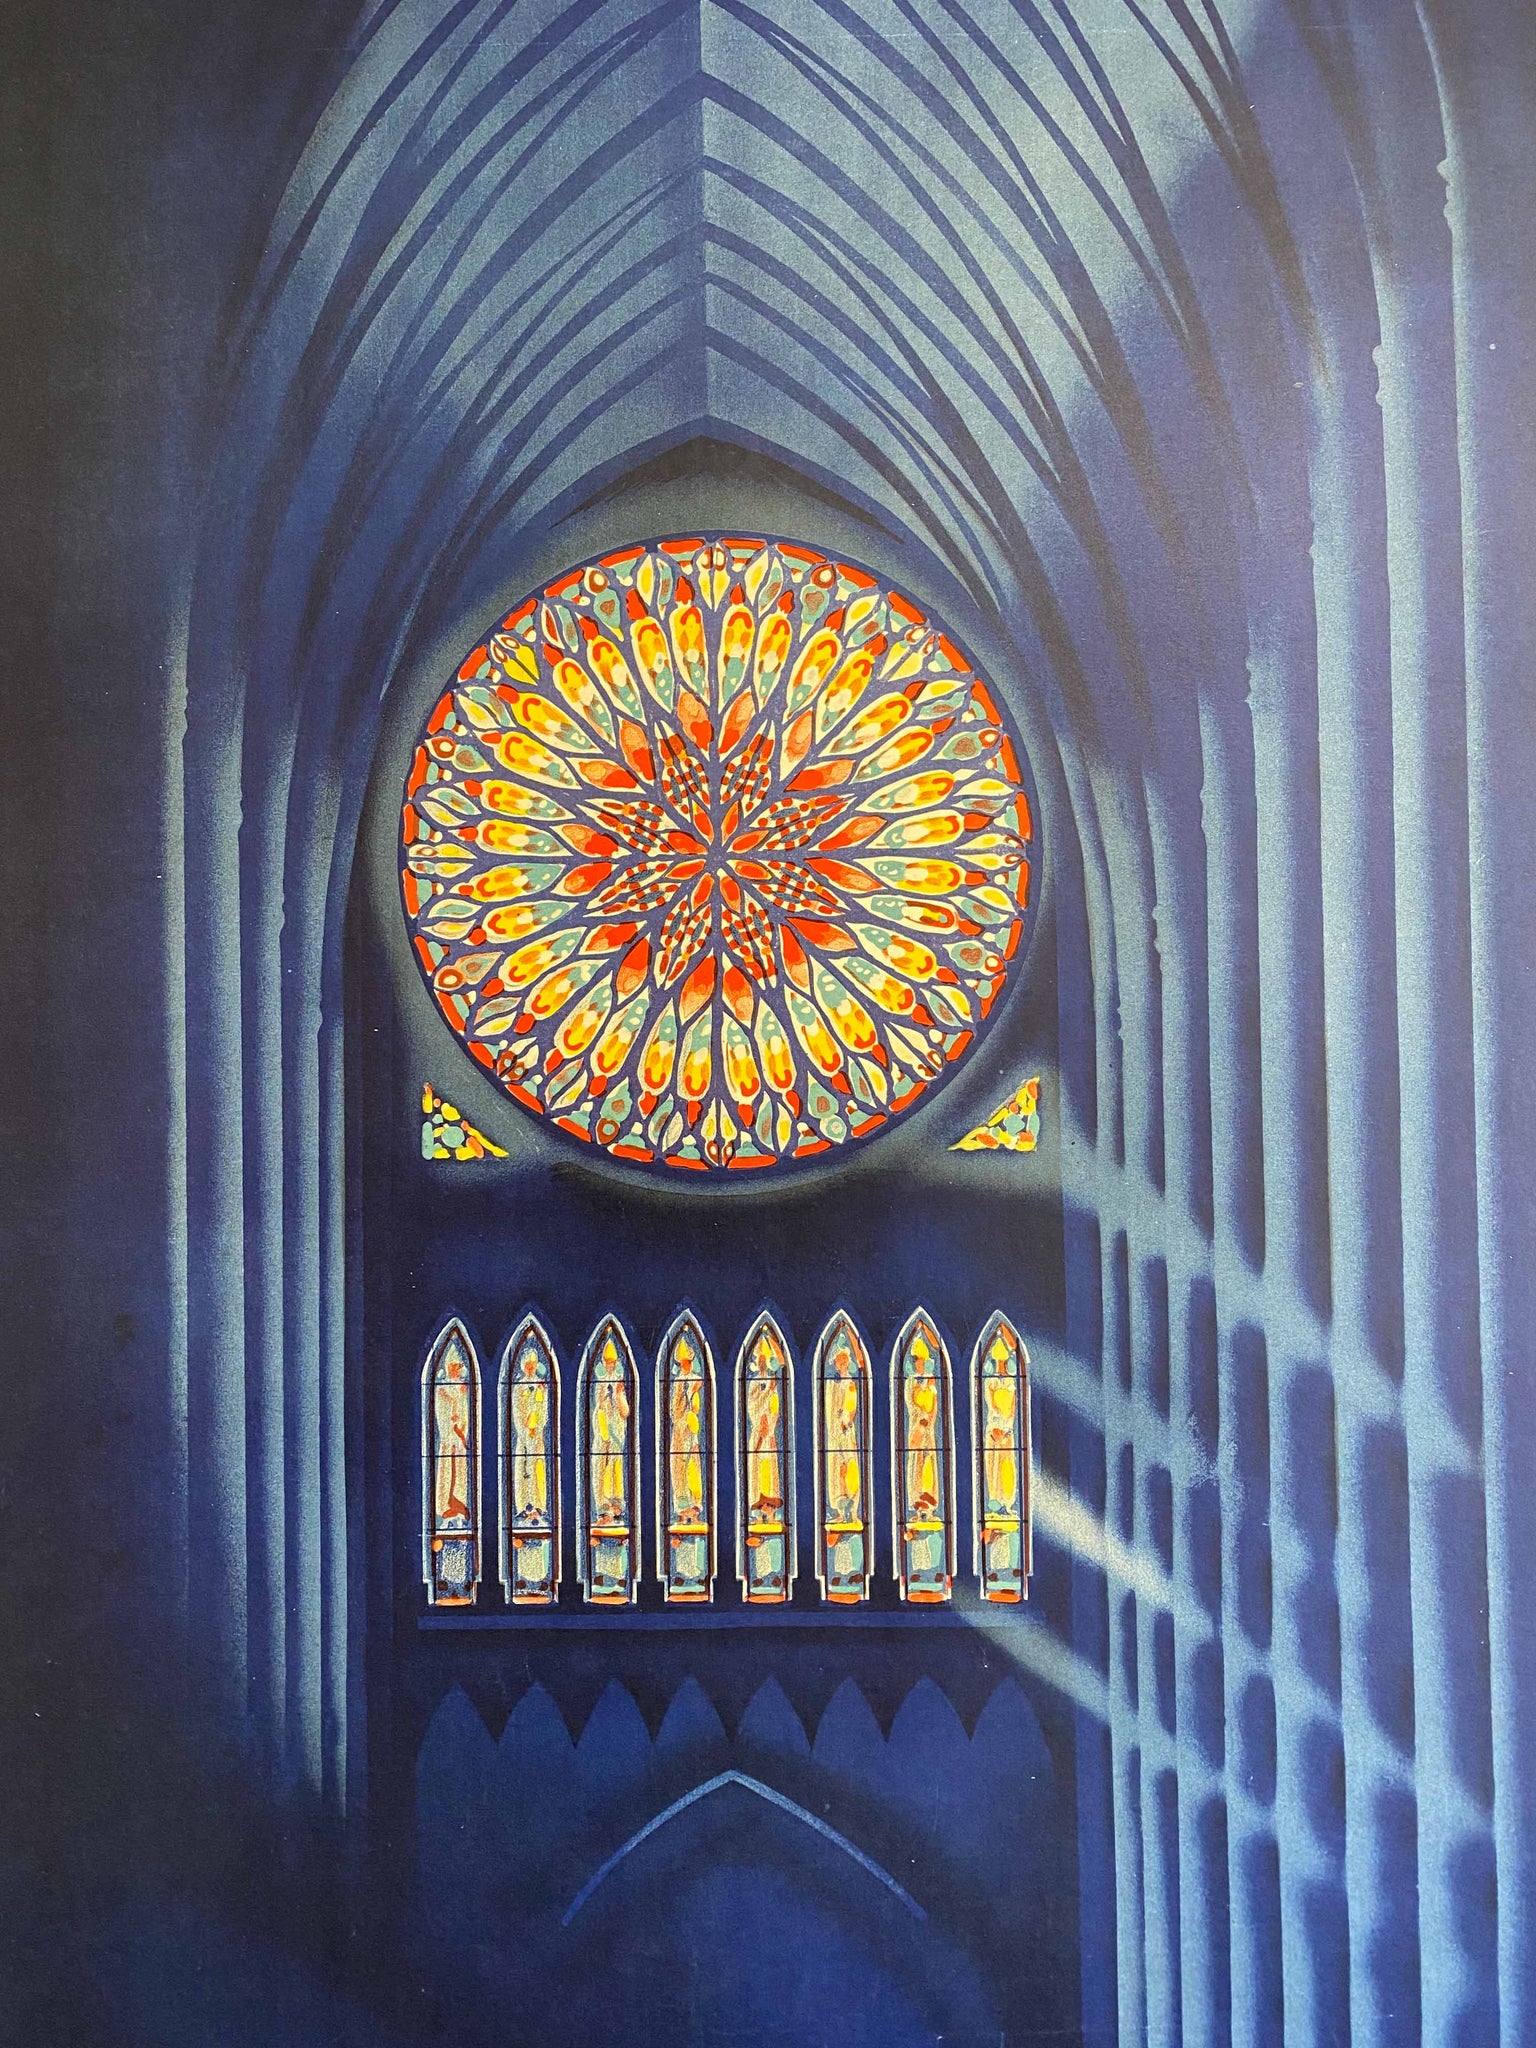 Affiche Cathédrales Joyaux de l'art Français Par G.Bourdier, Circa 1930